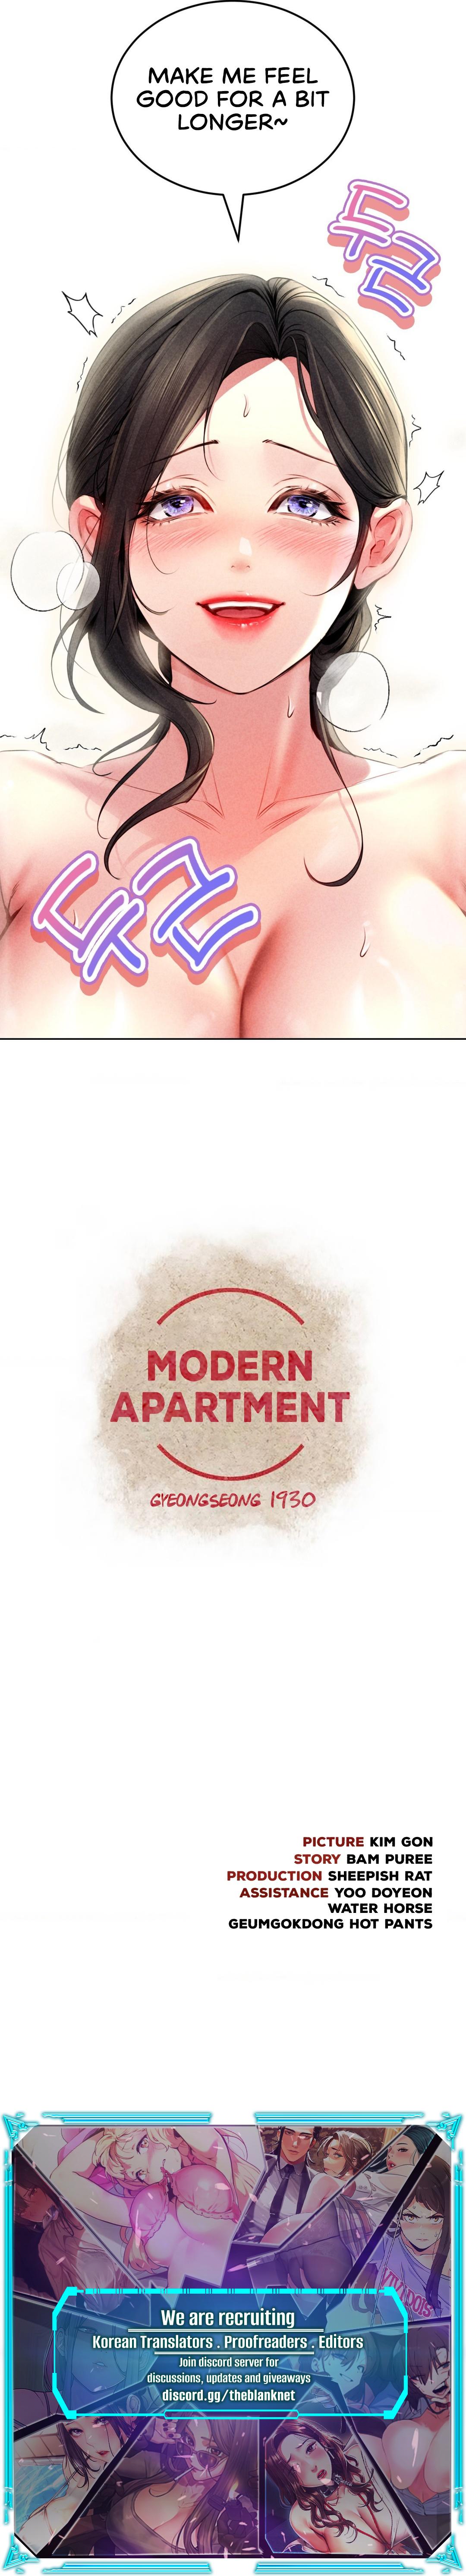 Read manhwa Modern Apartment, Gyeongseong 1930 Chapter 14 - SauceManhwa.com